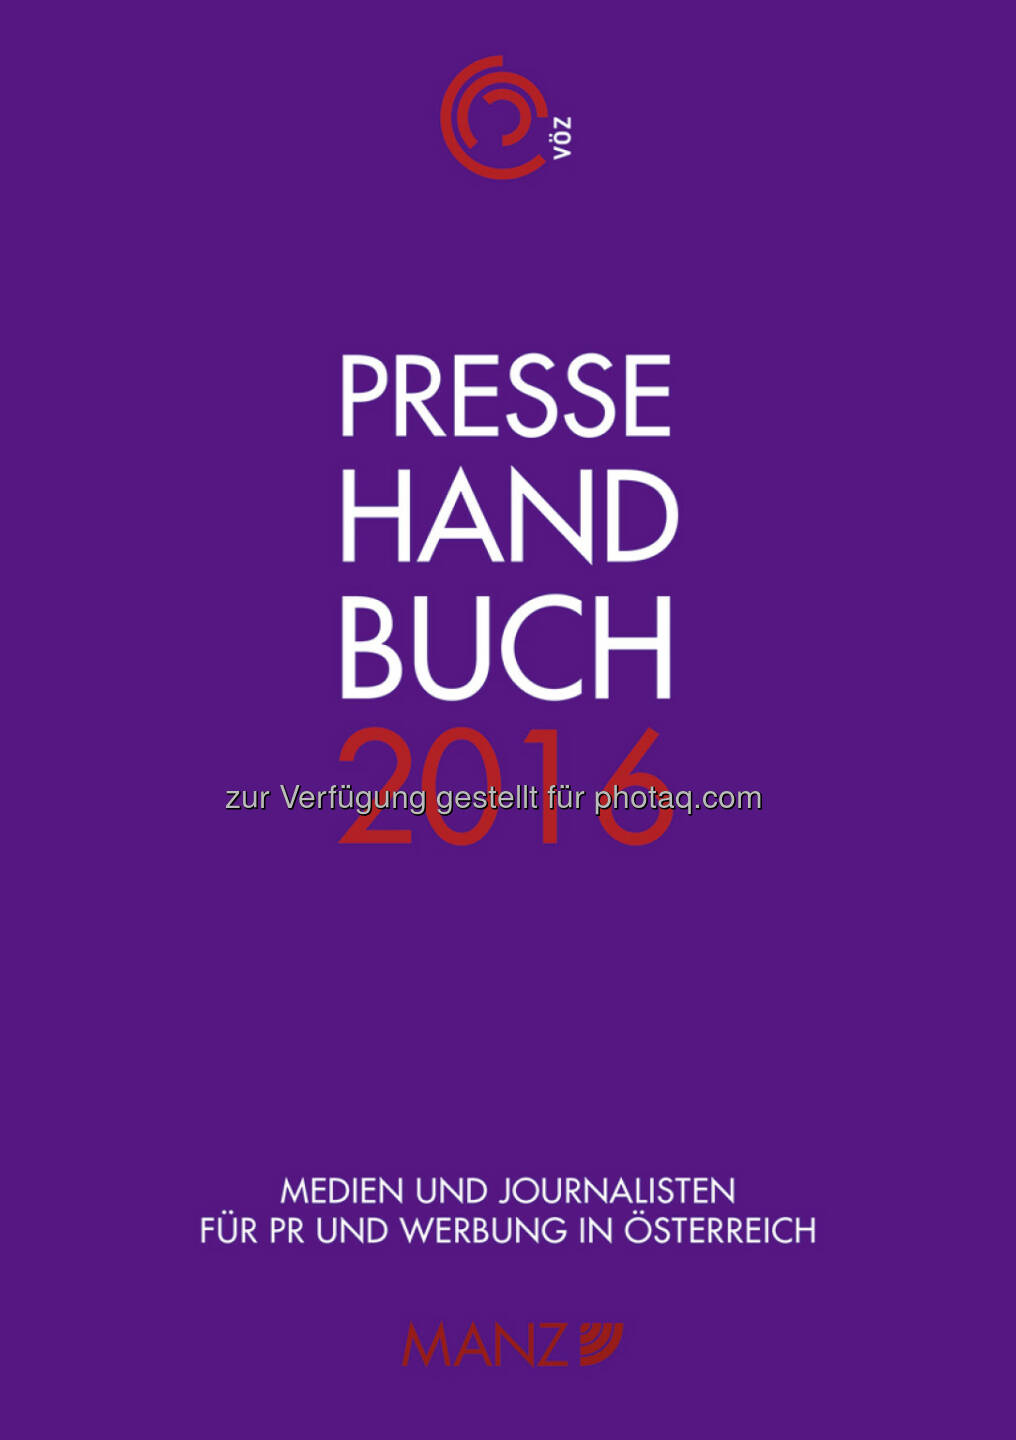 Pressehandbuch 2016 : Aktuelle Pressekontakte und Mediadaten für PR und Werbung in Österreich : Fotocredit: Manz